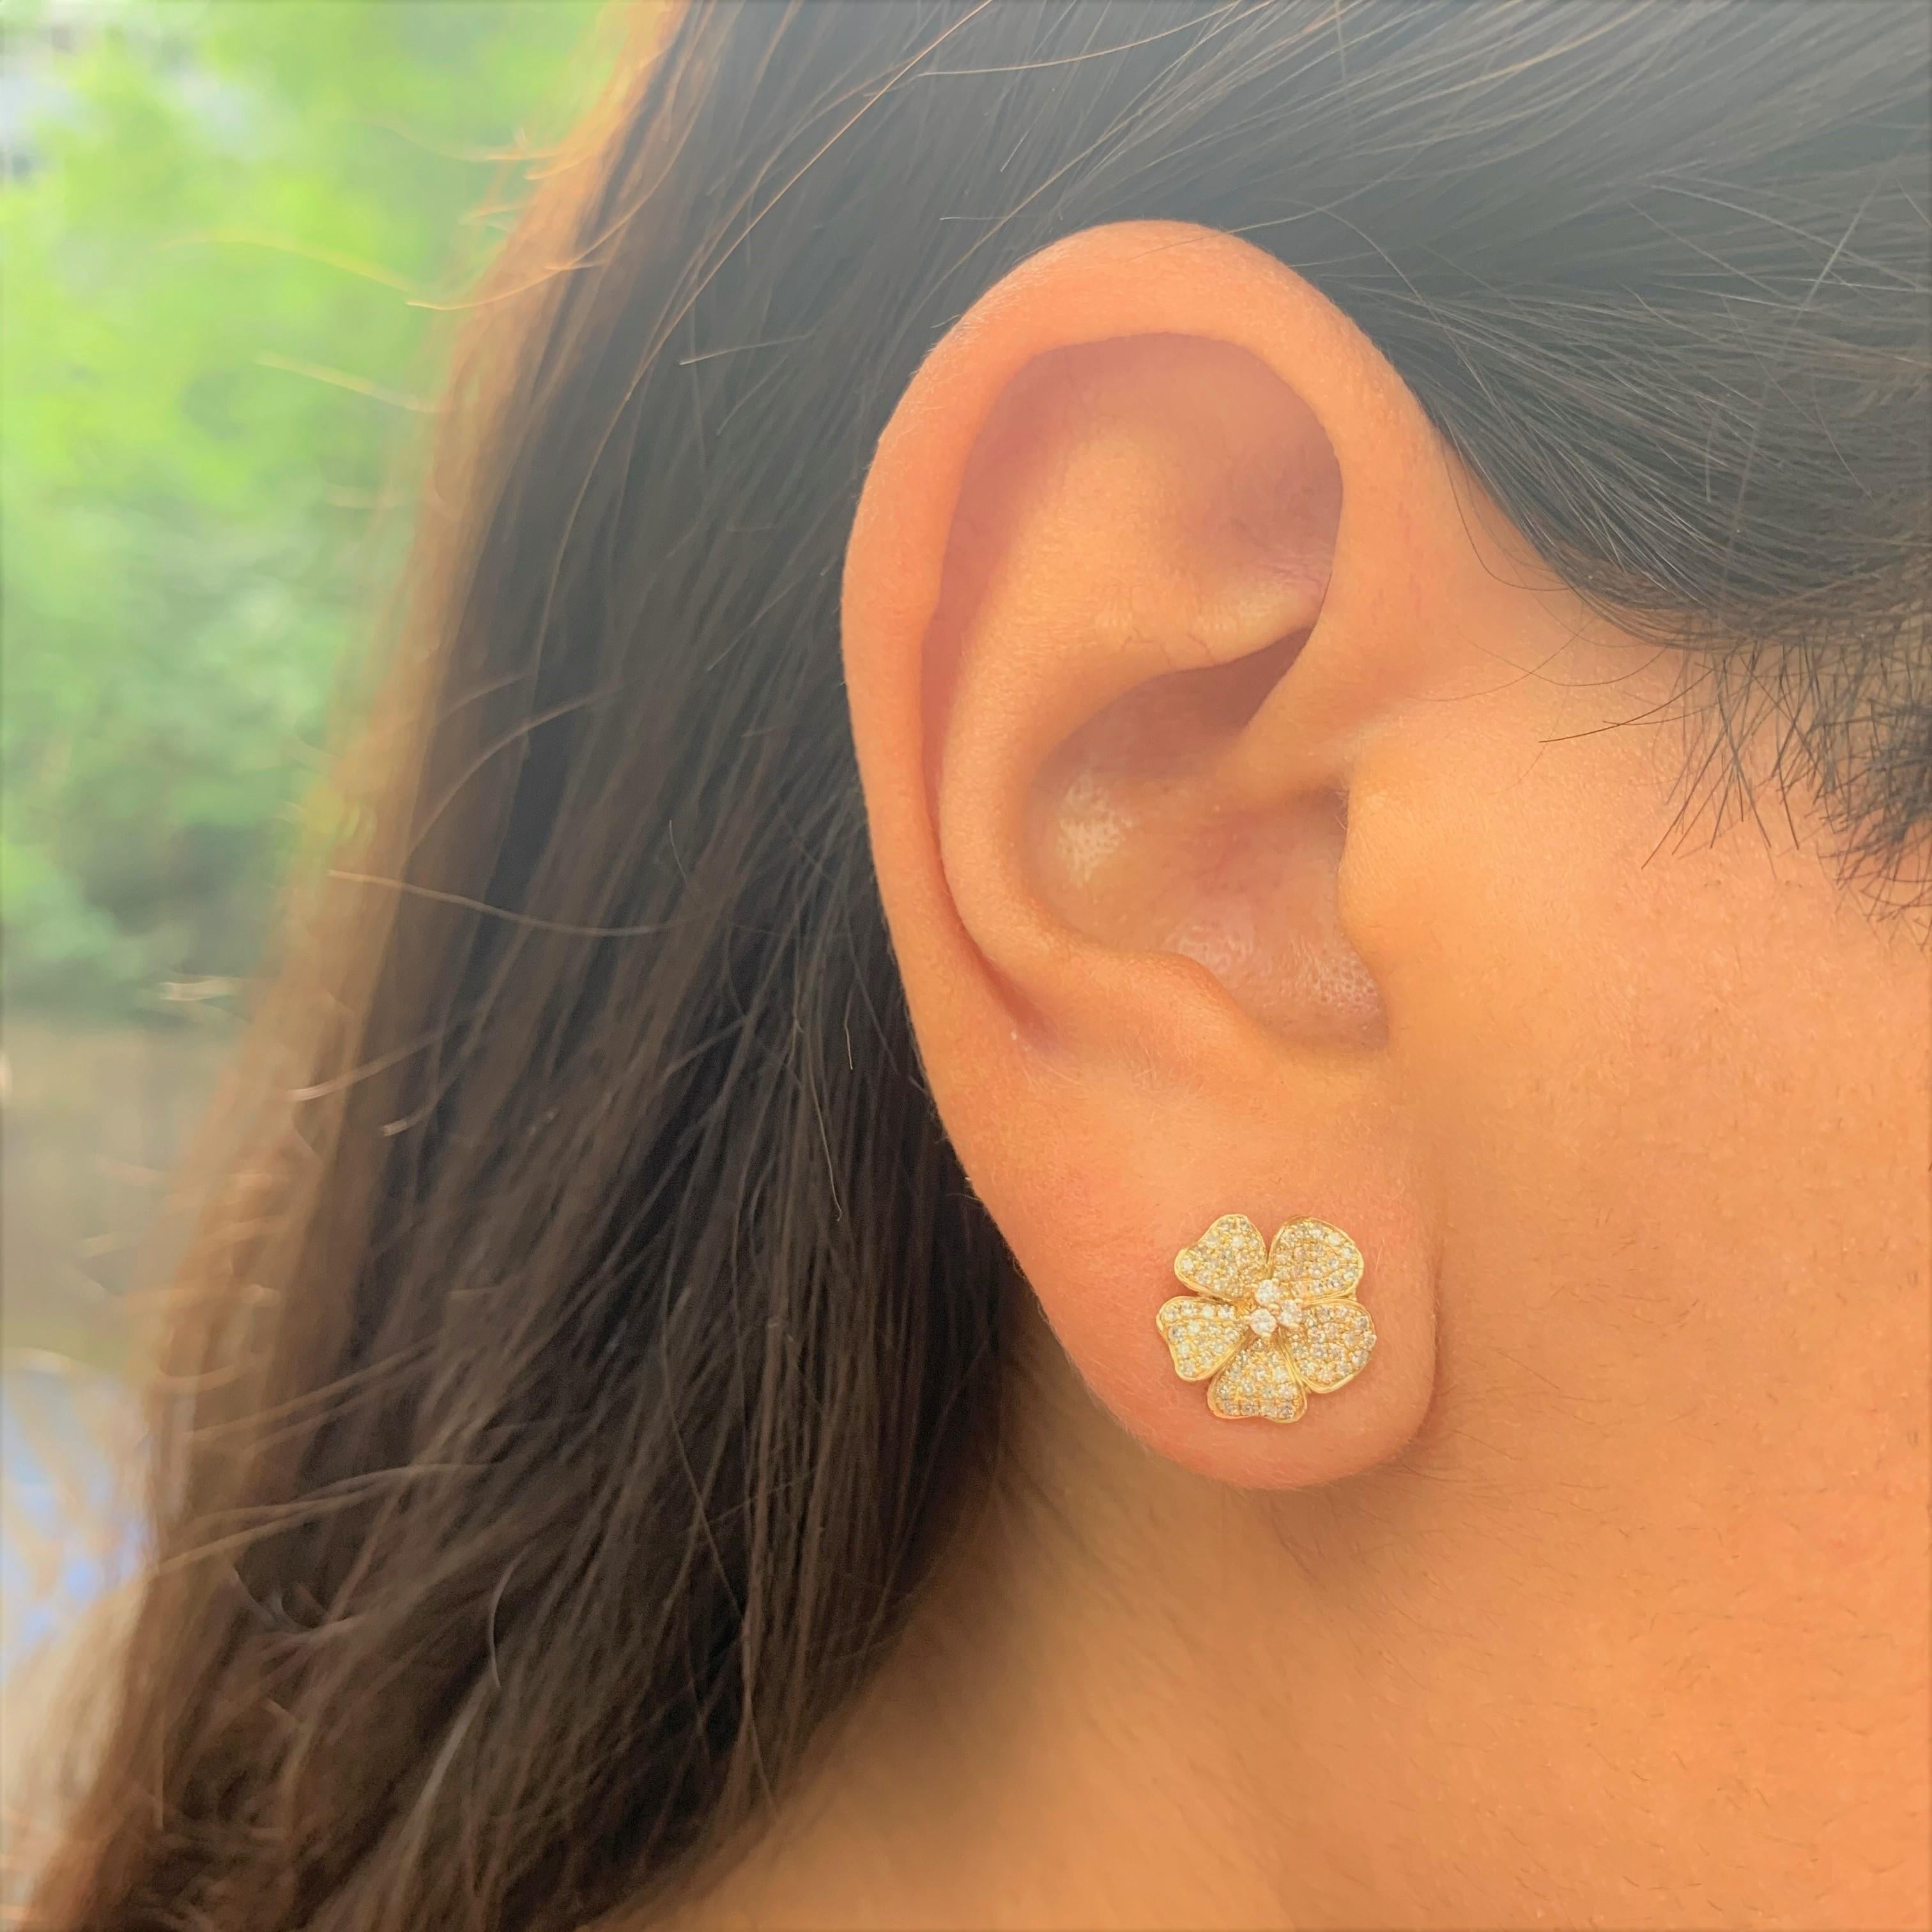 Ajoutez ces magnifiques boucles d'oreilles fleuries à votre look ! Fabriquées en or 14 carats, ces boucles d'oreilles sont ornées de 0,32 carat de diamants blancs ronds naturels et sont fixées par des boutons-poussoirs papillon.
-or 14K
-0,32 carats